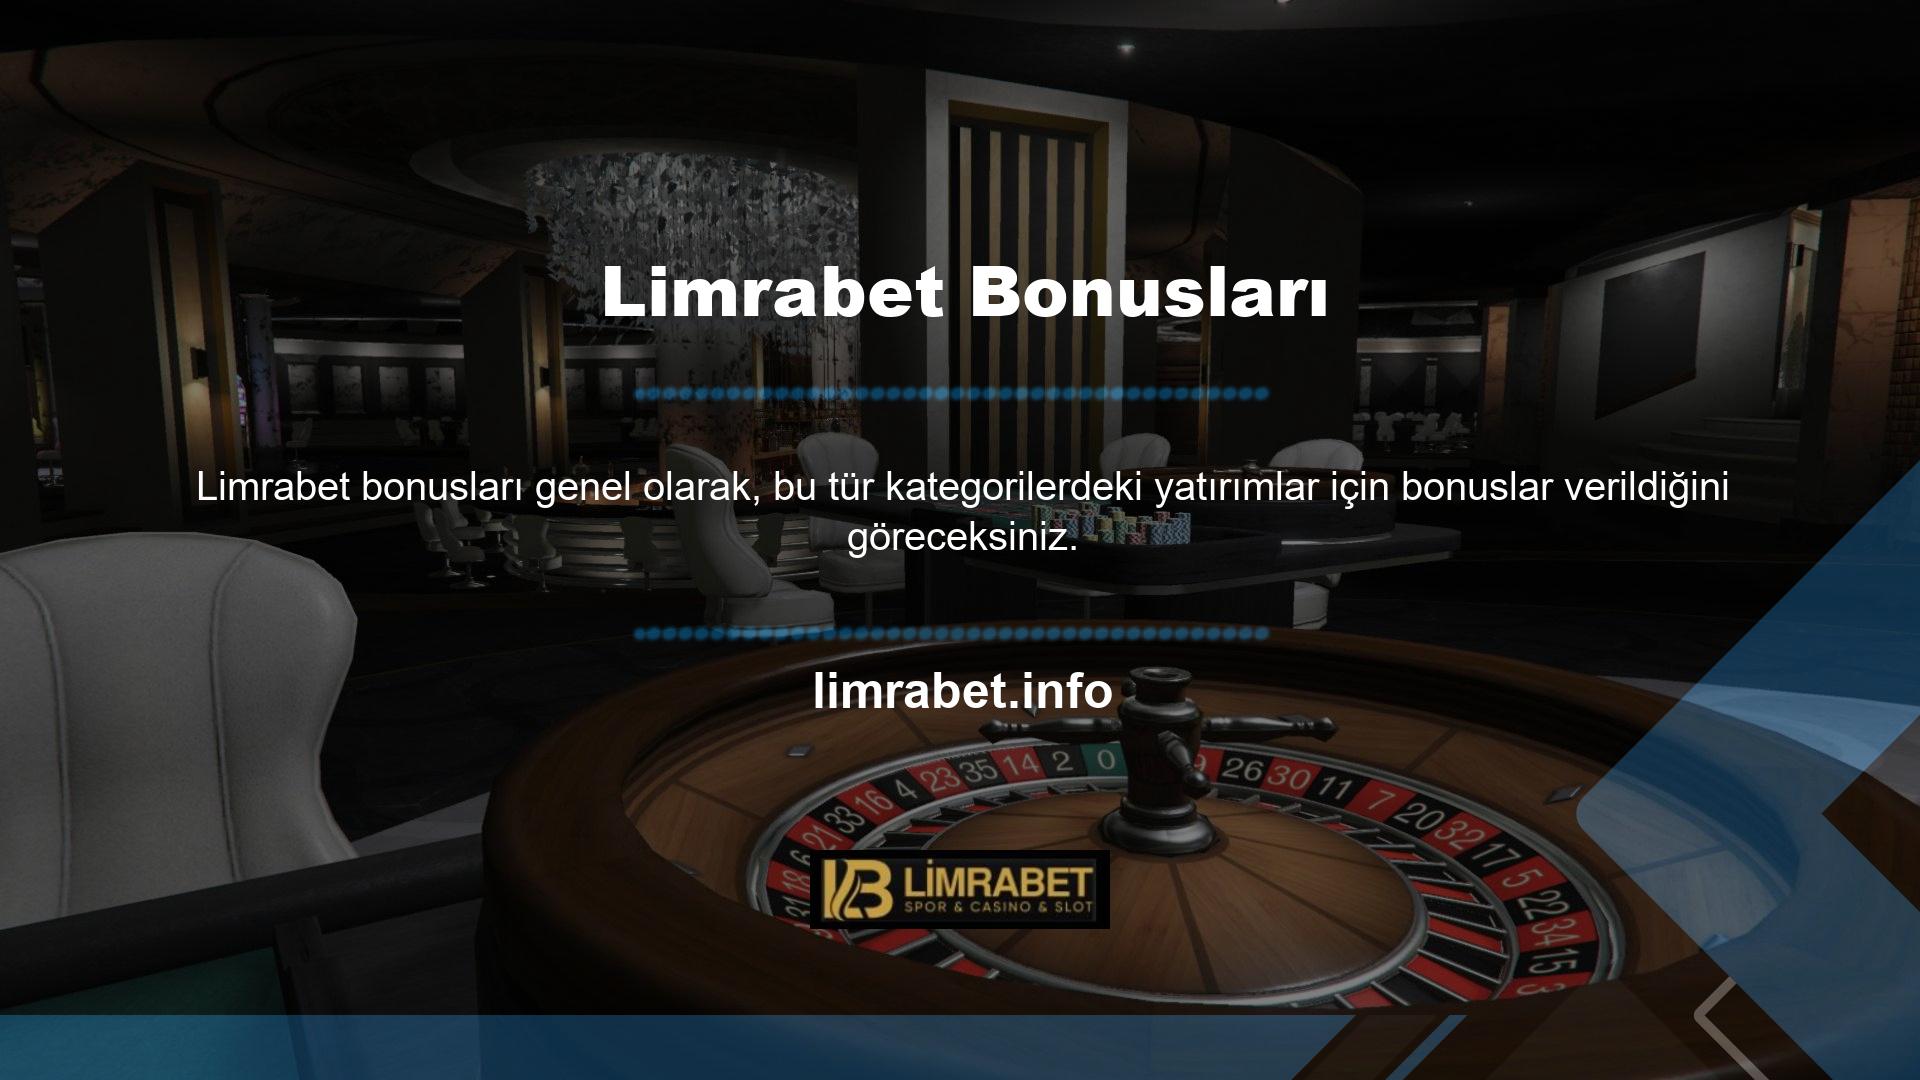 Bu bonuslar sayesinde Limrabet üyeliği size sitenin birçok kategorideki hizmetlerinden daha fazla yararlanma fırsatı verir